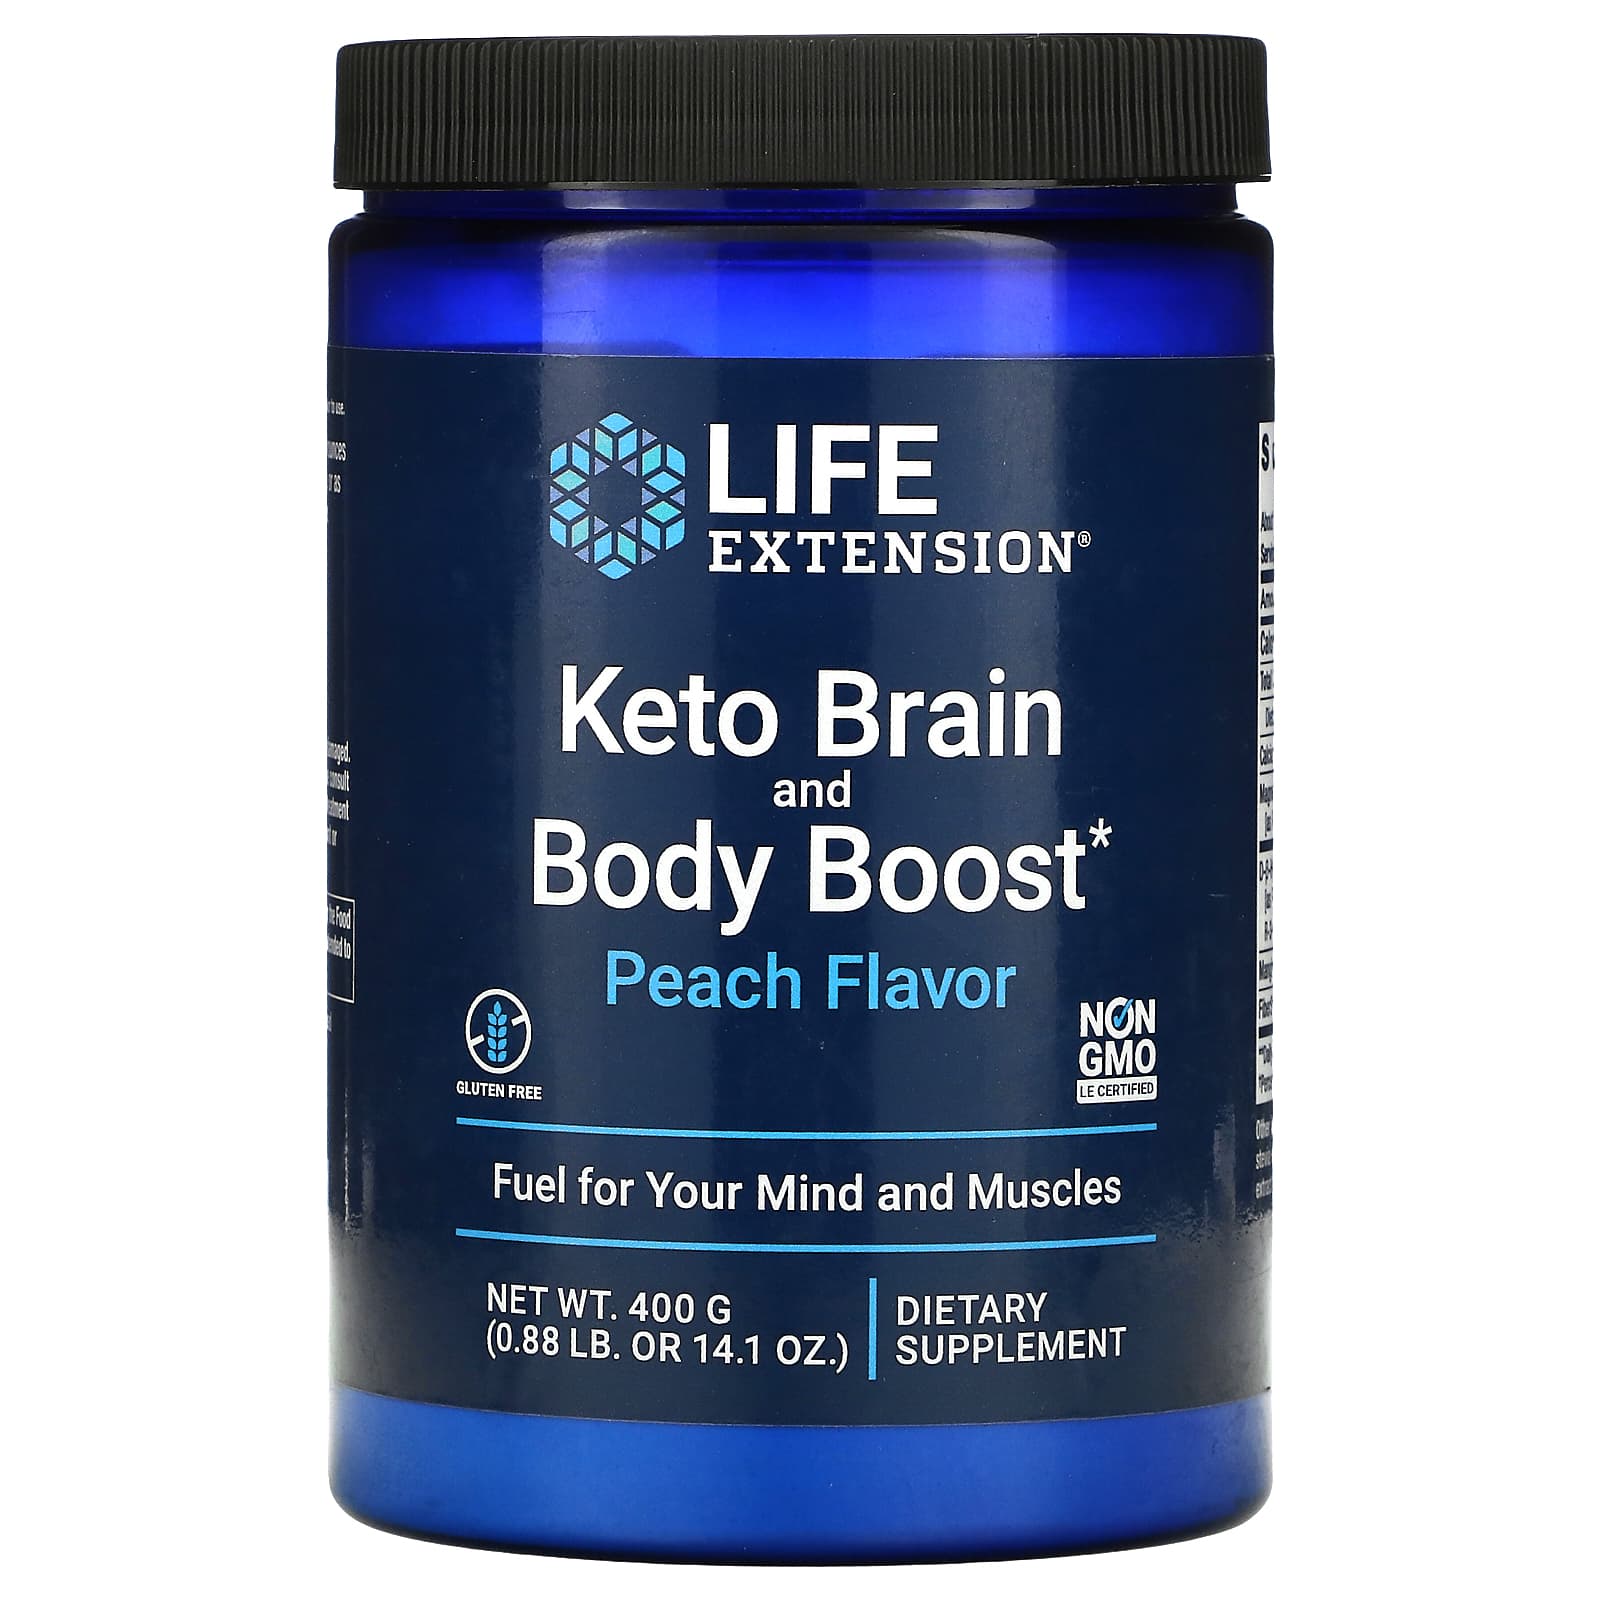 Keto Brain and Body Boost